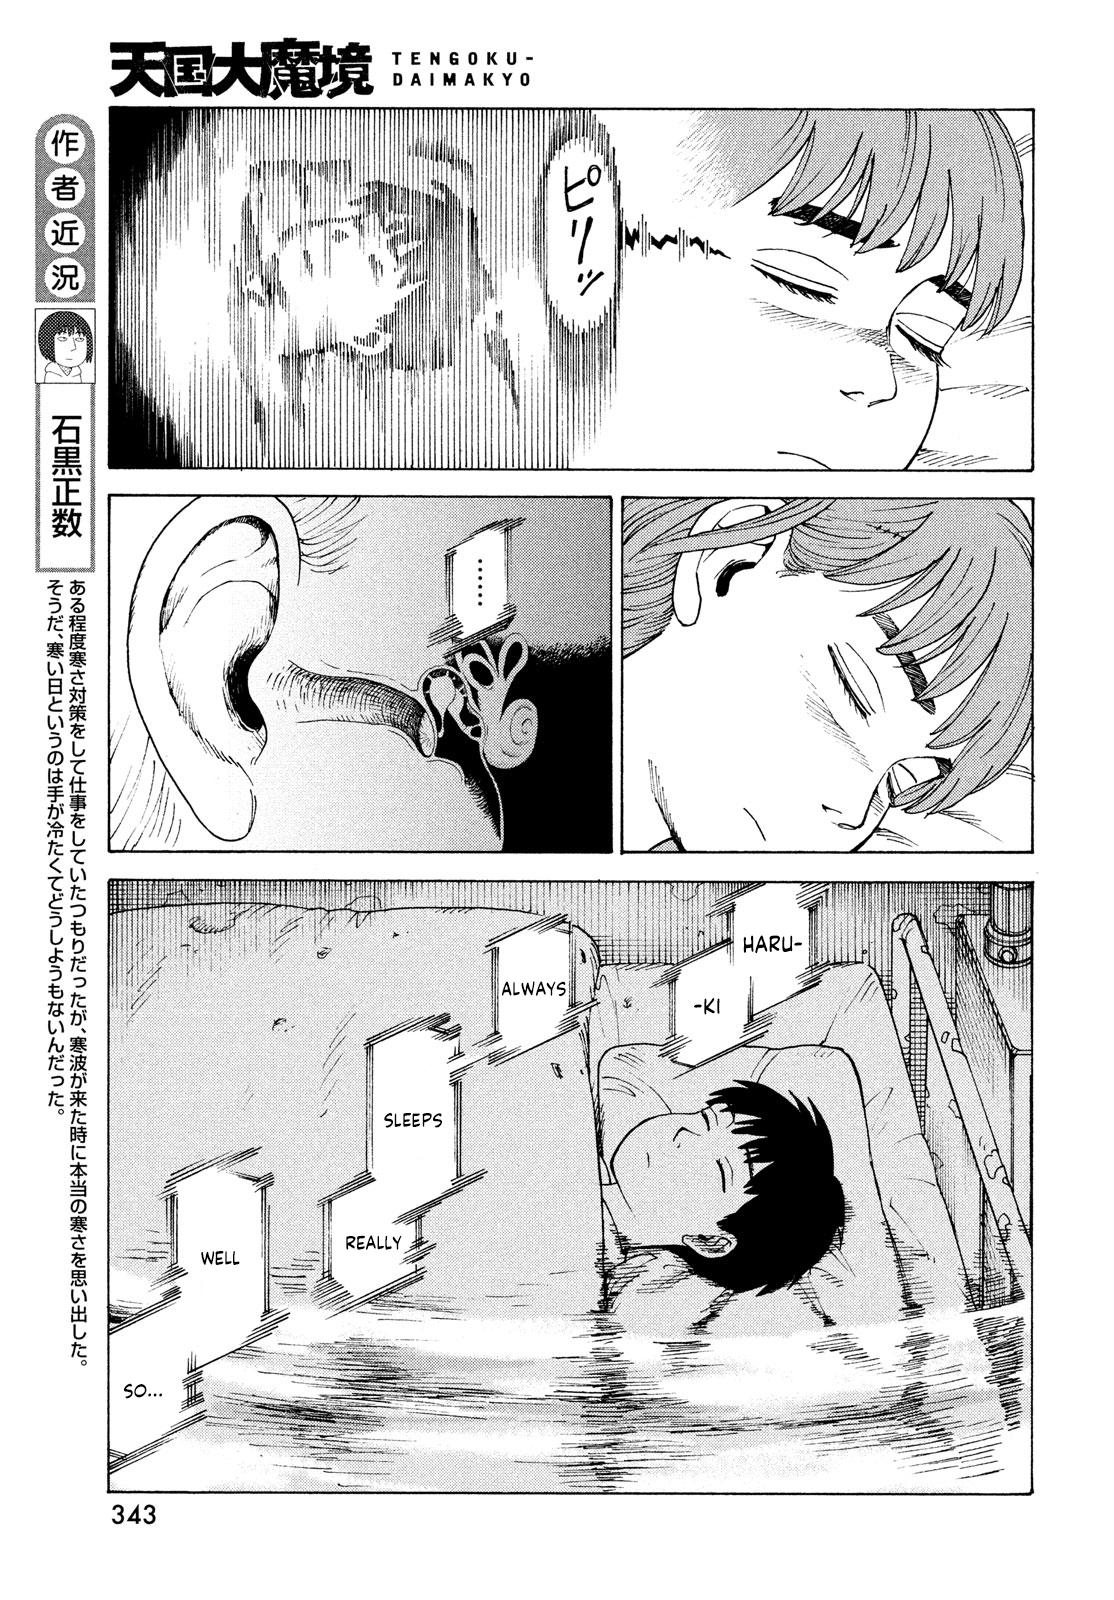 Tengoku Daimakyou Chapter 33: Inazaki Robin ➁ page 13 - Mangakakalot